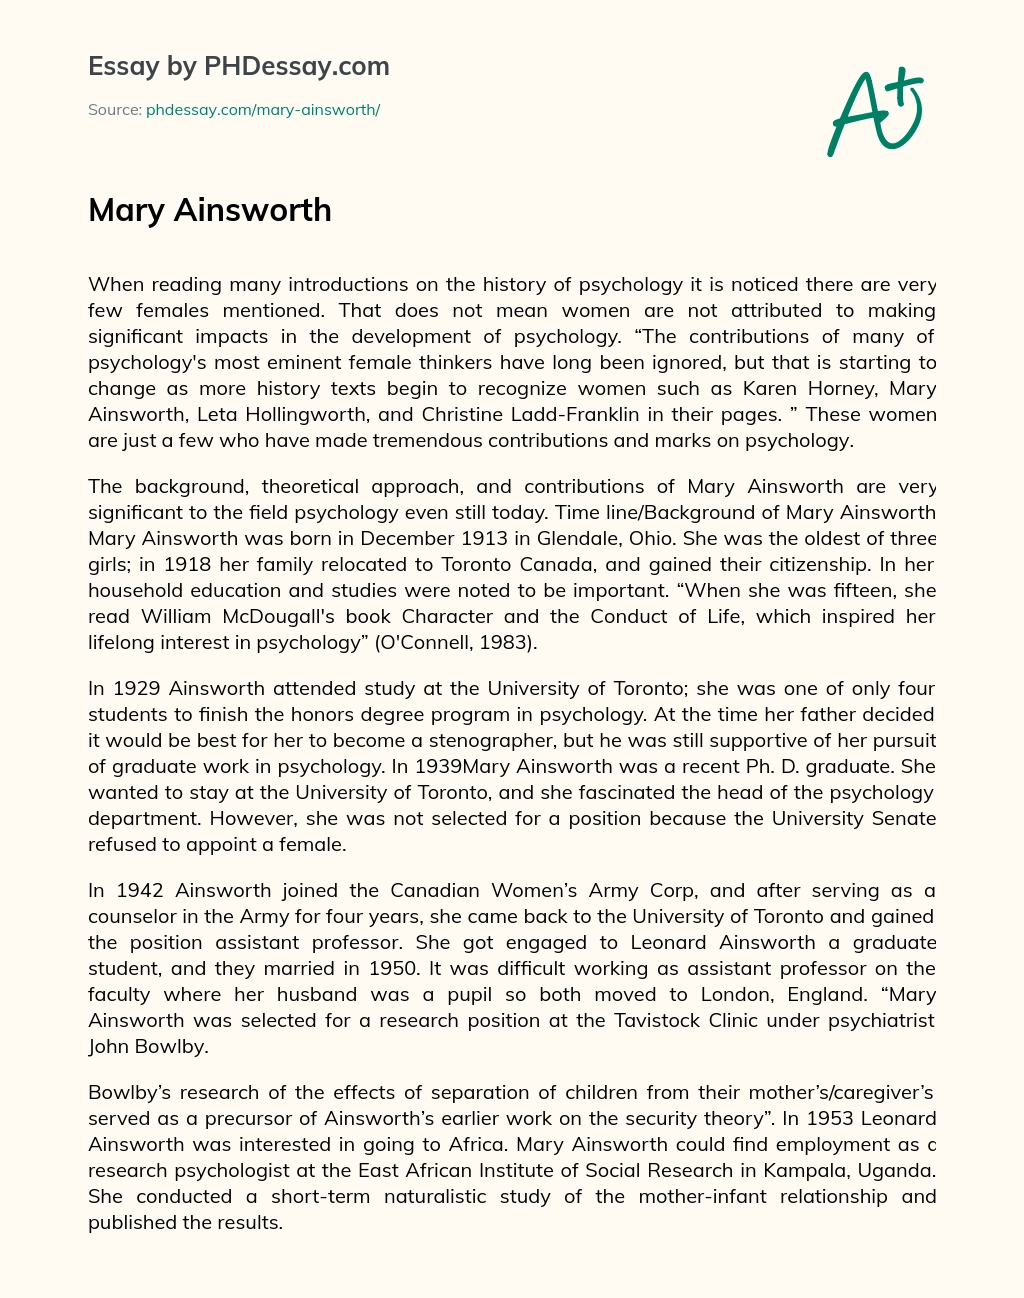 Mary Ainsworth essay